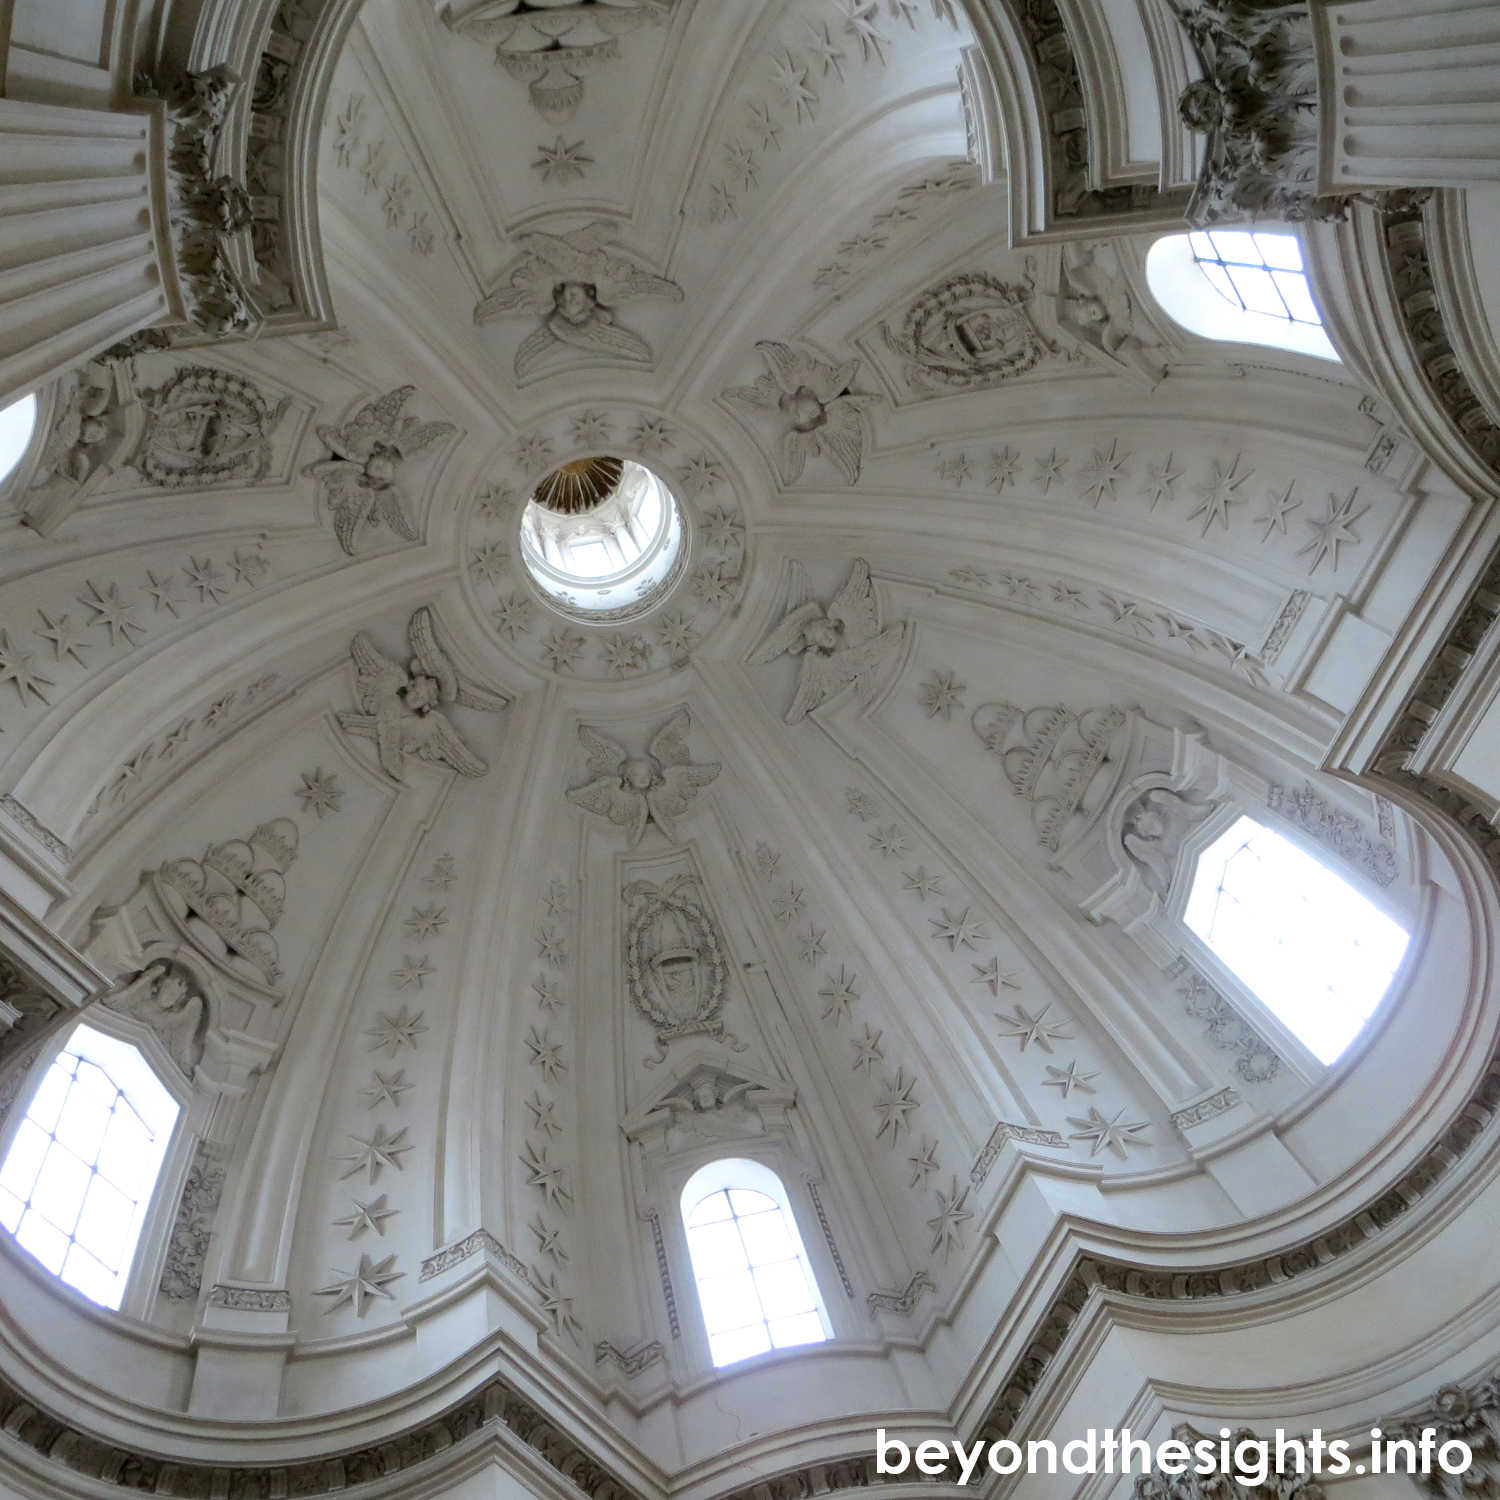 Dome of Sant'Ivo alla Sapienza, Francesco Borromini